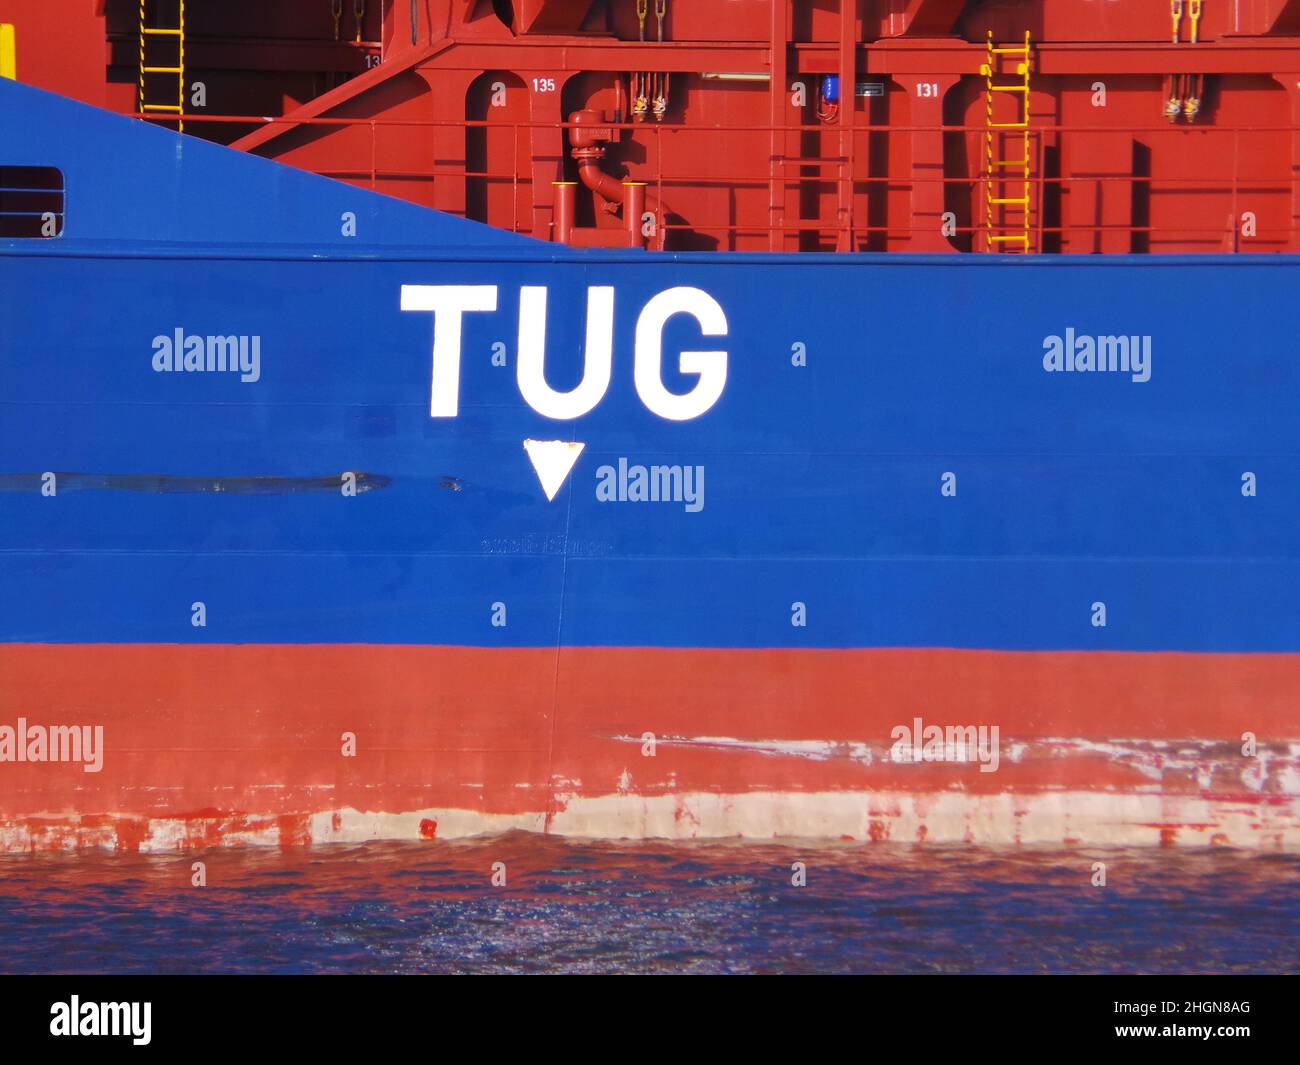 tug-marker-sign-on-freight-ship-2HGN8AG.jpg